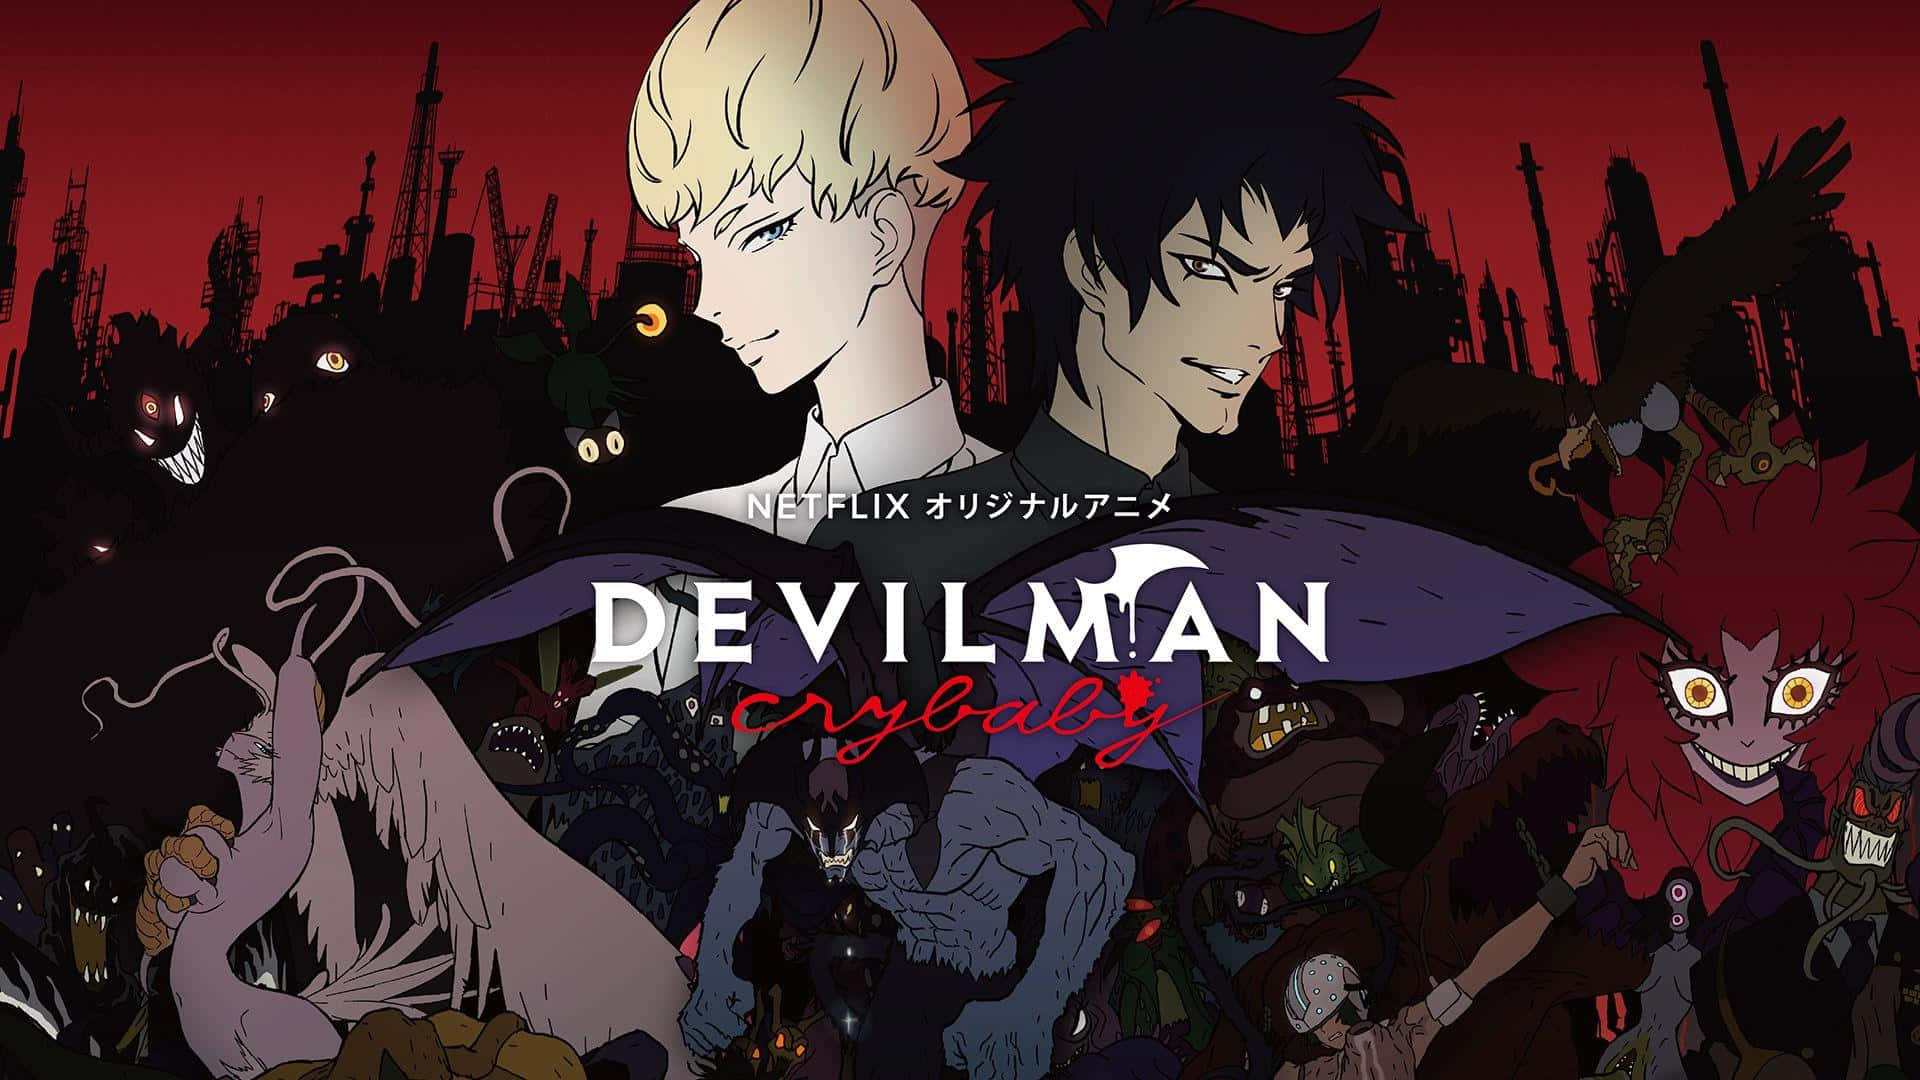 Akirafudo, El Protagonista De La Popular Serie De Anime Devilman Crybaby, Está Listo Para Enfrentar Sus Últimos Demonios.